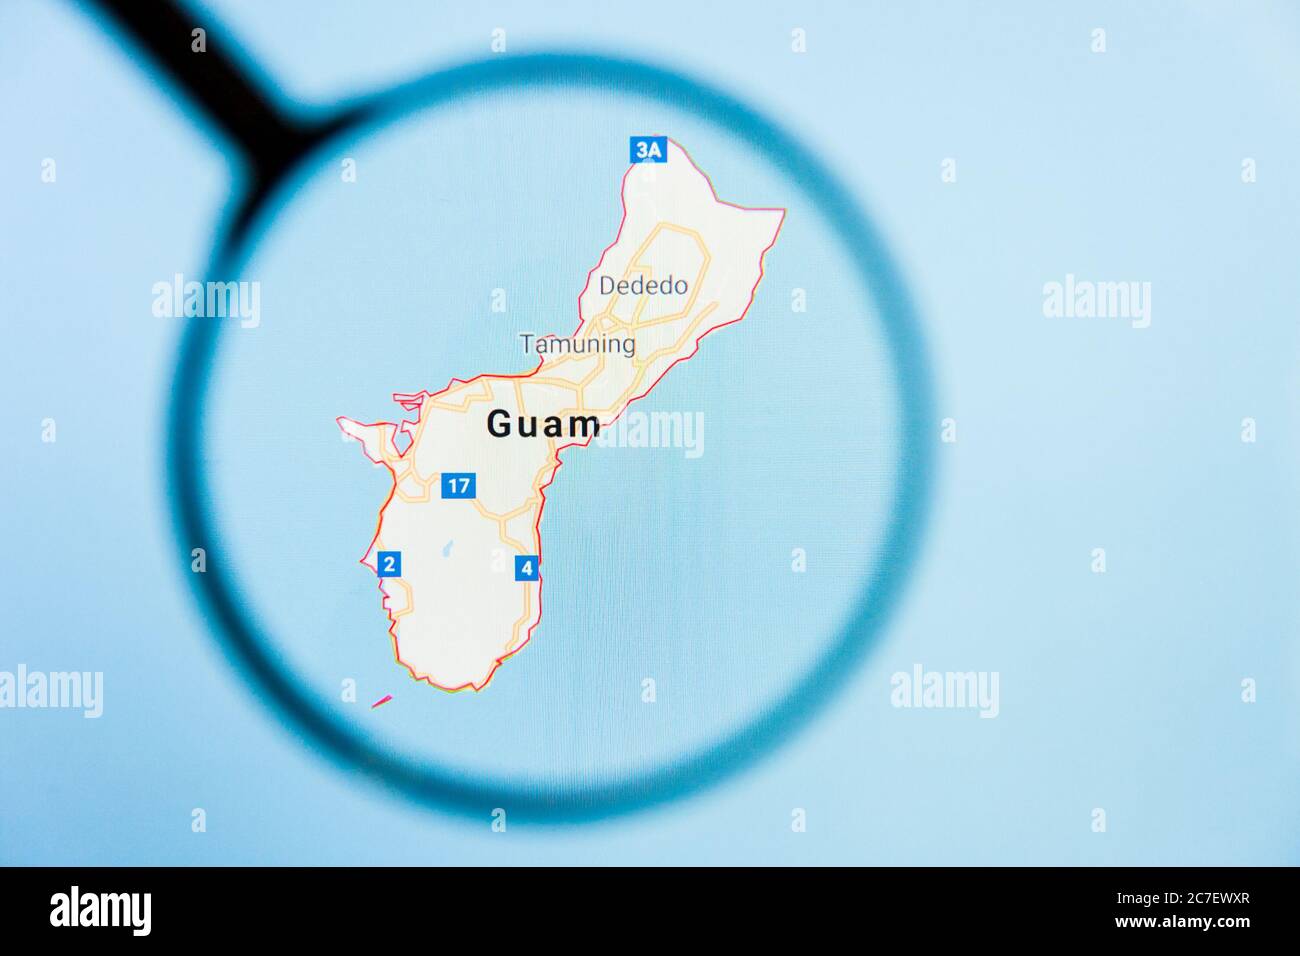 Los Angeles, California, USA - 15 Marzo 2019: Guam, GU Stato dell'America visualizzazione concetto illustrativo sullo schermo del display attraverso lente di ingrandimento Foto Stock